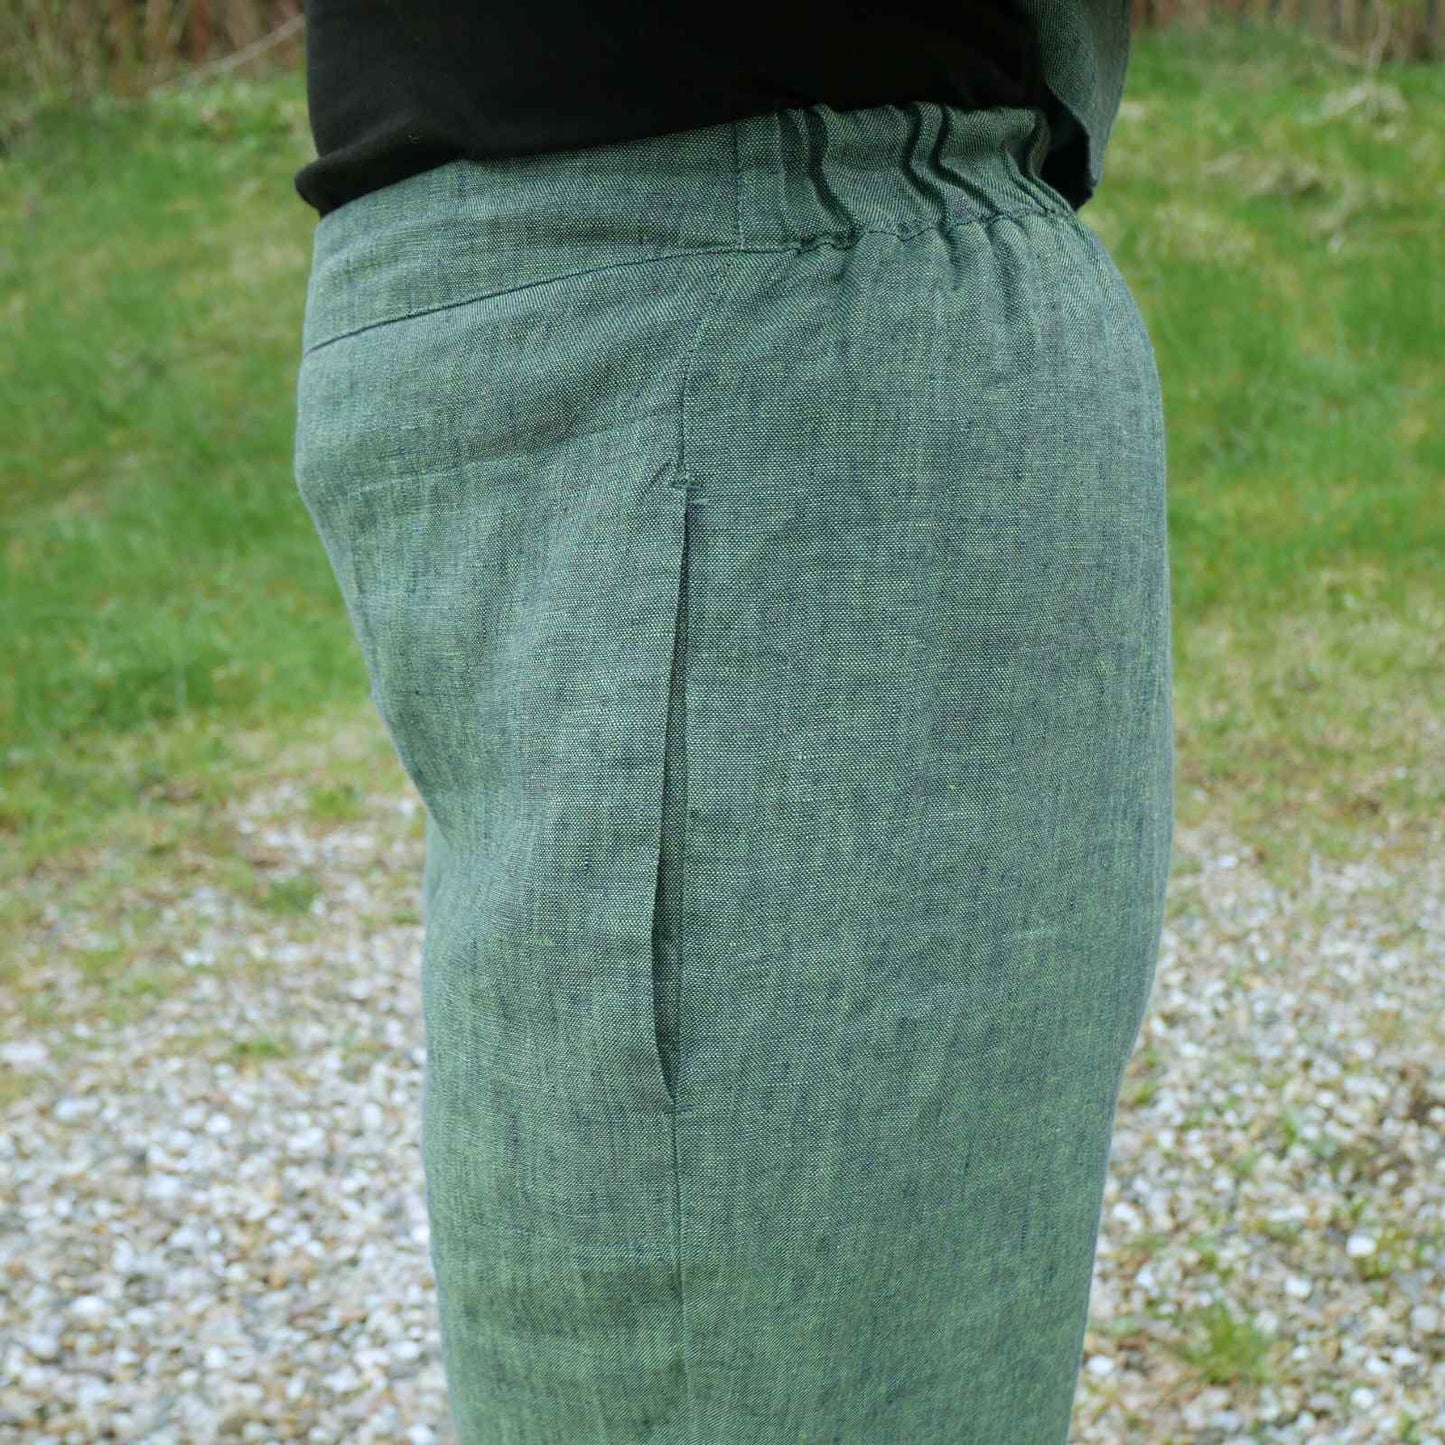 grønne hørbukser med elastik i lænden fra siden.